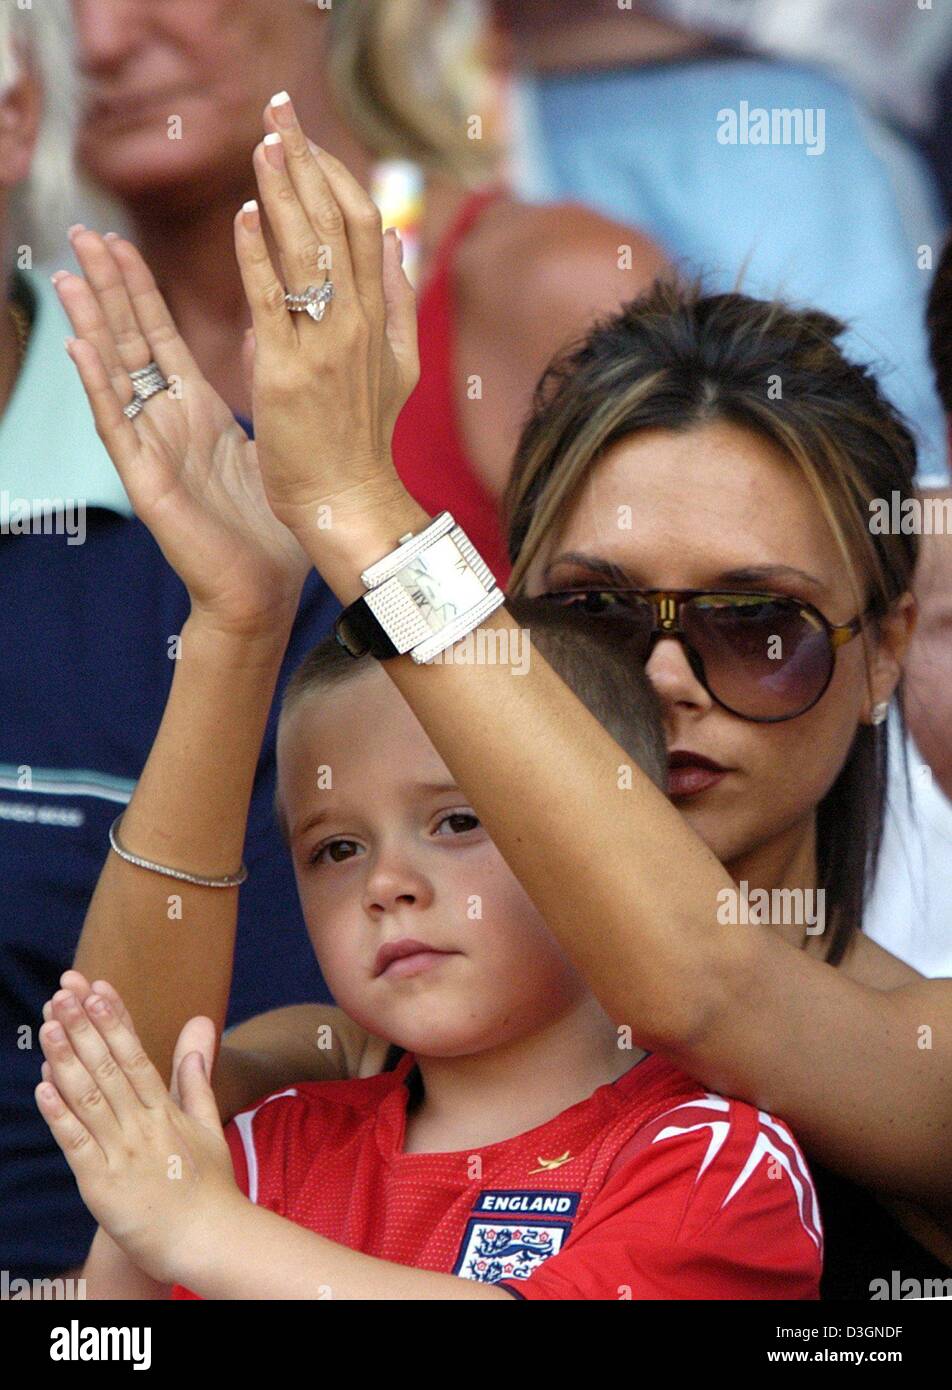 (Dpa) - Victoria Beckham (L), épouse du milieu de terrain Anglais David Beckham, et leur fils Brooklyn applaudir leurs mains comme ils suivent l'Euro de football 2004 Jeu de groupe s'opposant à l'Angleterre et la Suisse à la cidade Stadium à Coimbra, Portugal, 17 juin 2004. L'Angleterre a gagné 3-0.  + + +PAS D'APPLICATIONS DE TÉLÉPHONIE MOBILE + + + Banque D'Images